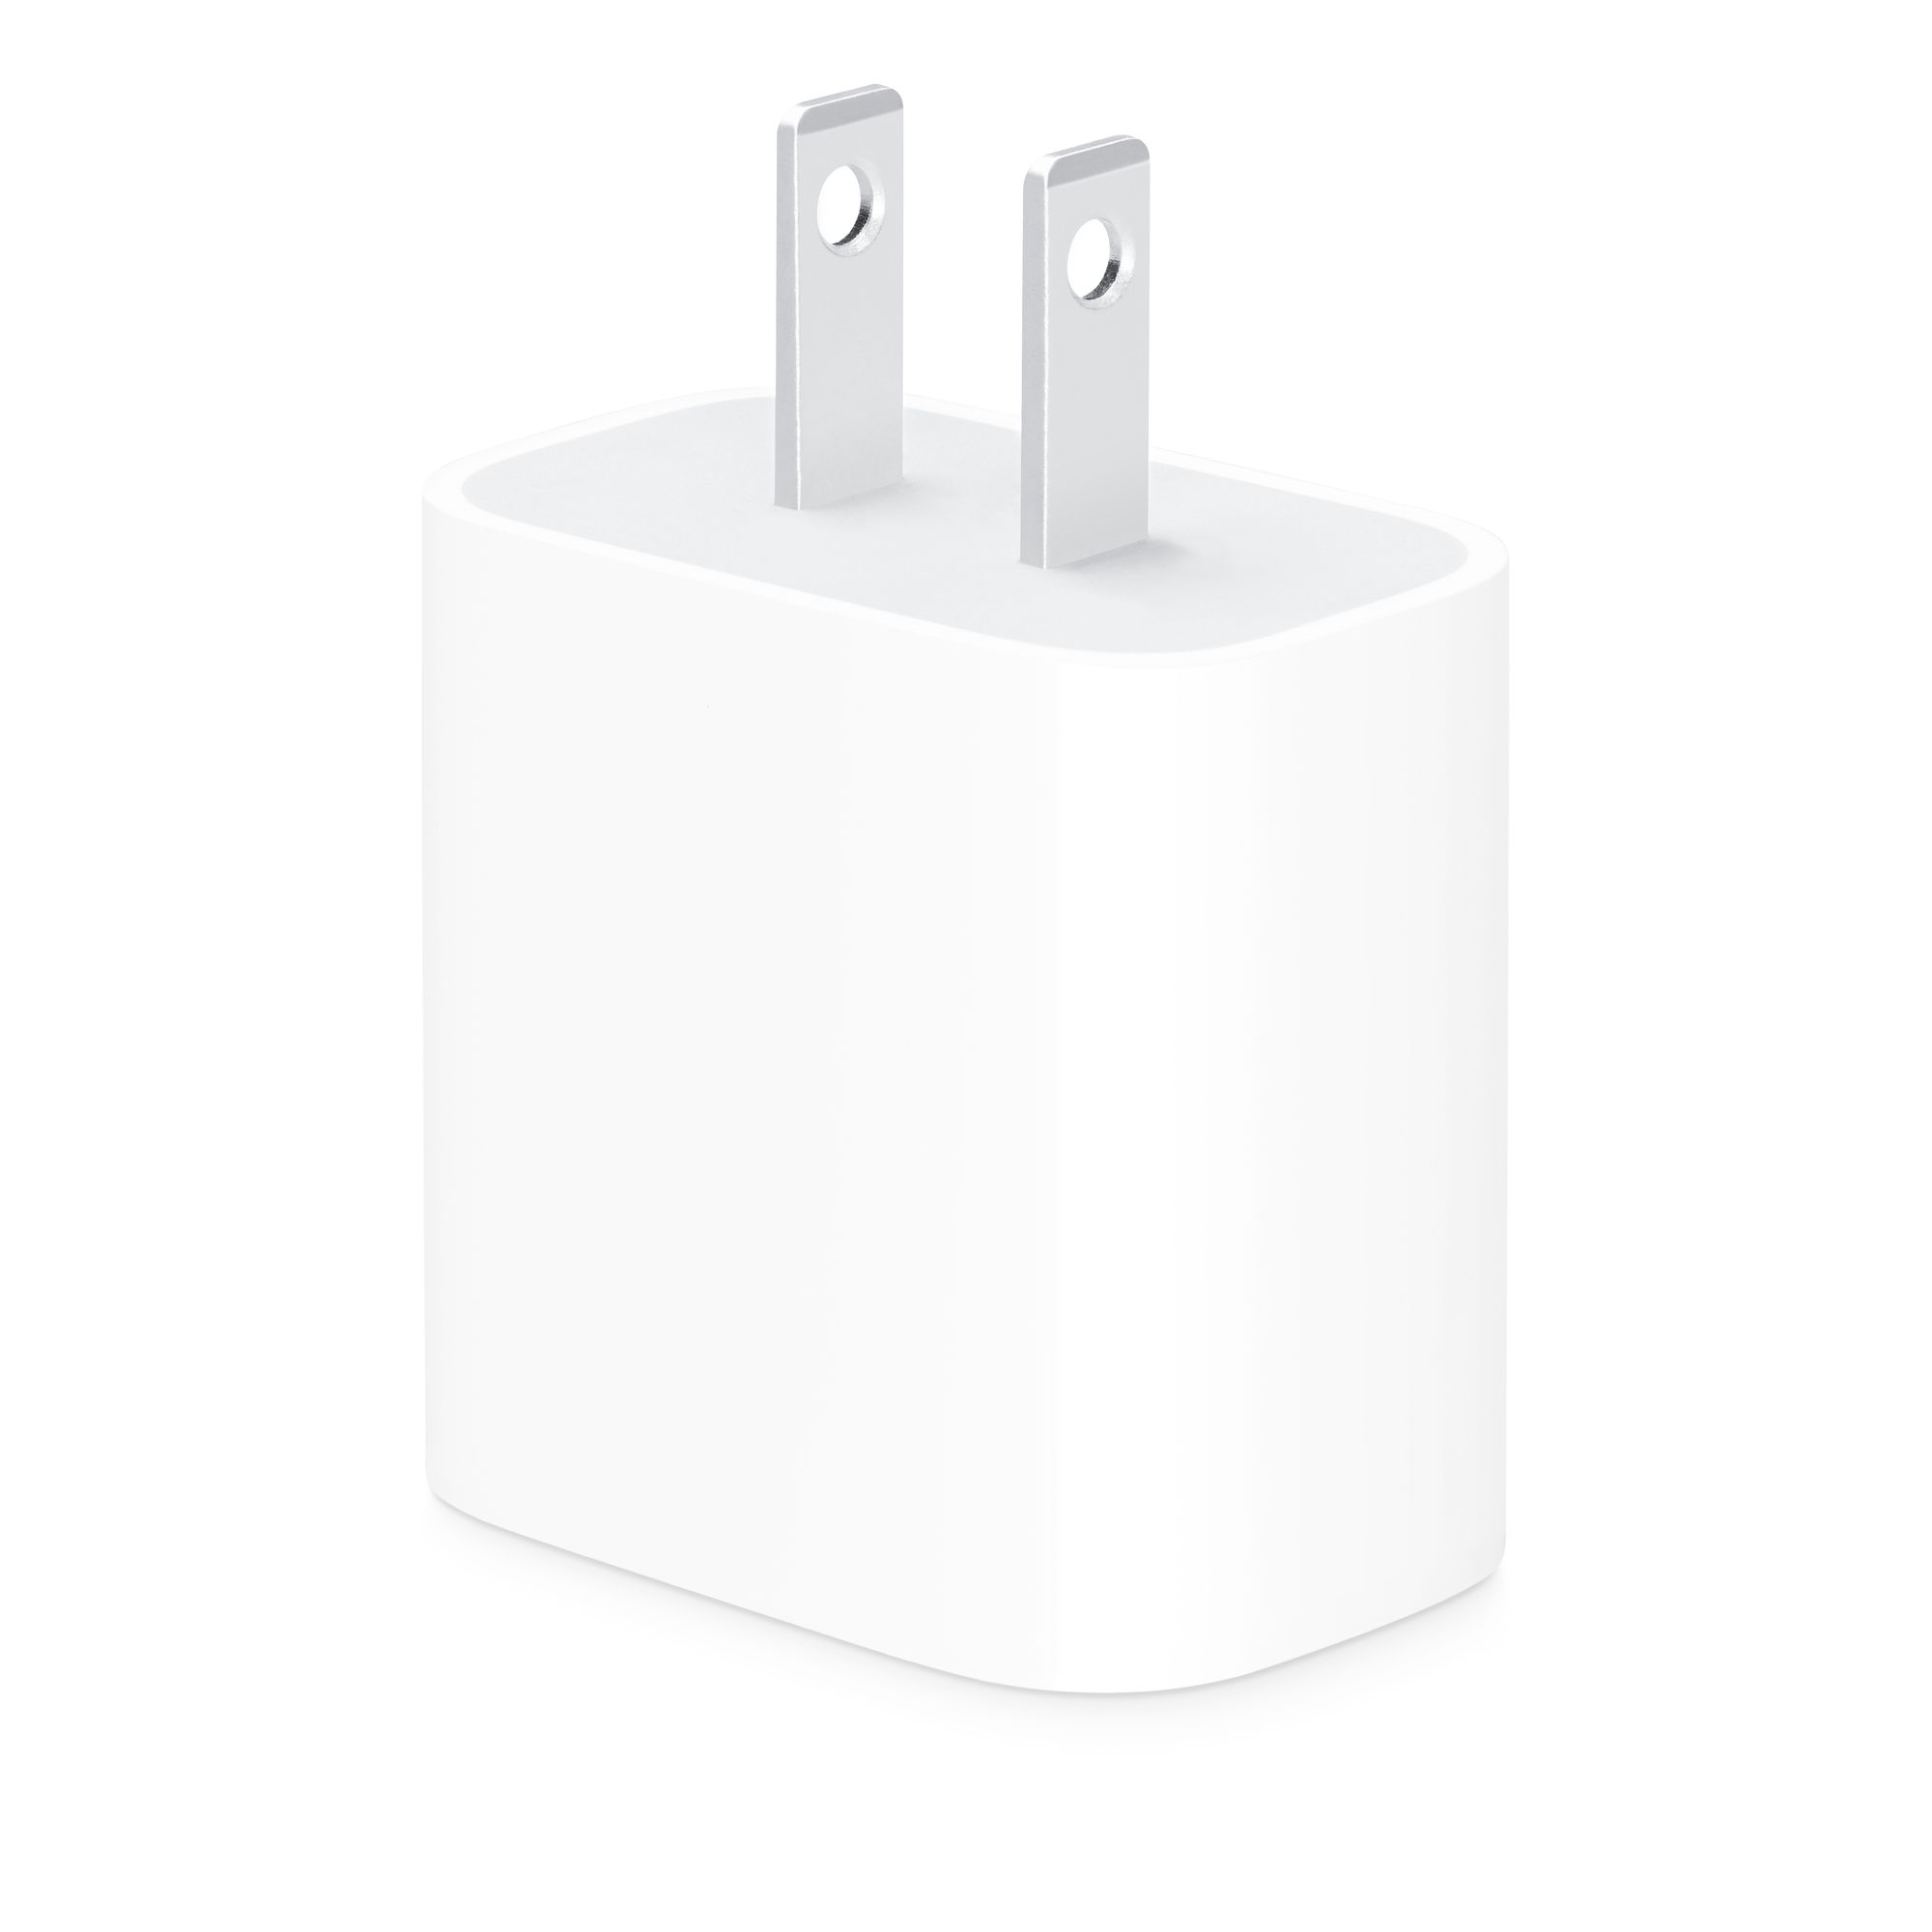 Es oficial, el cargador USB-C será obligatorio para todos. Apple